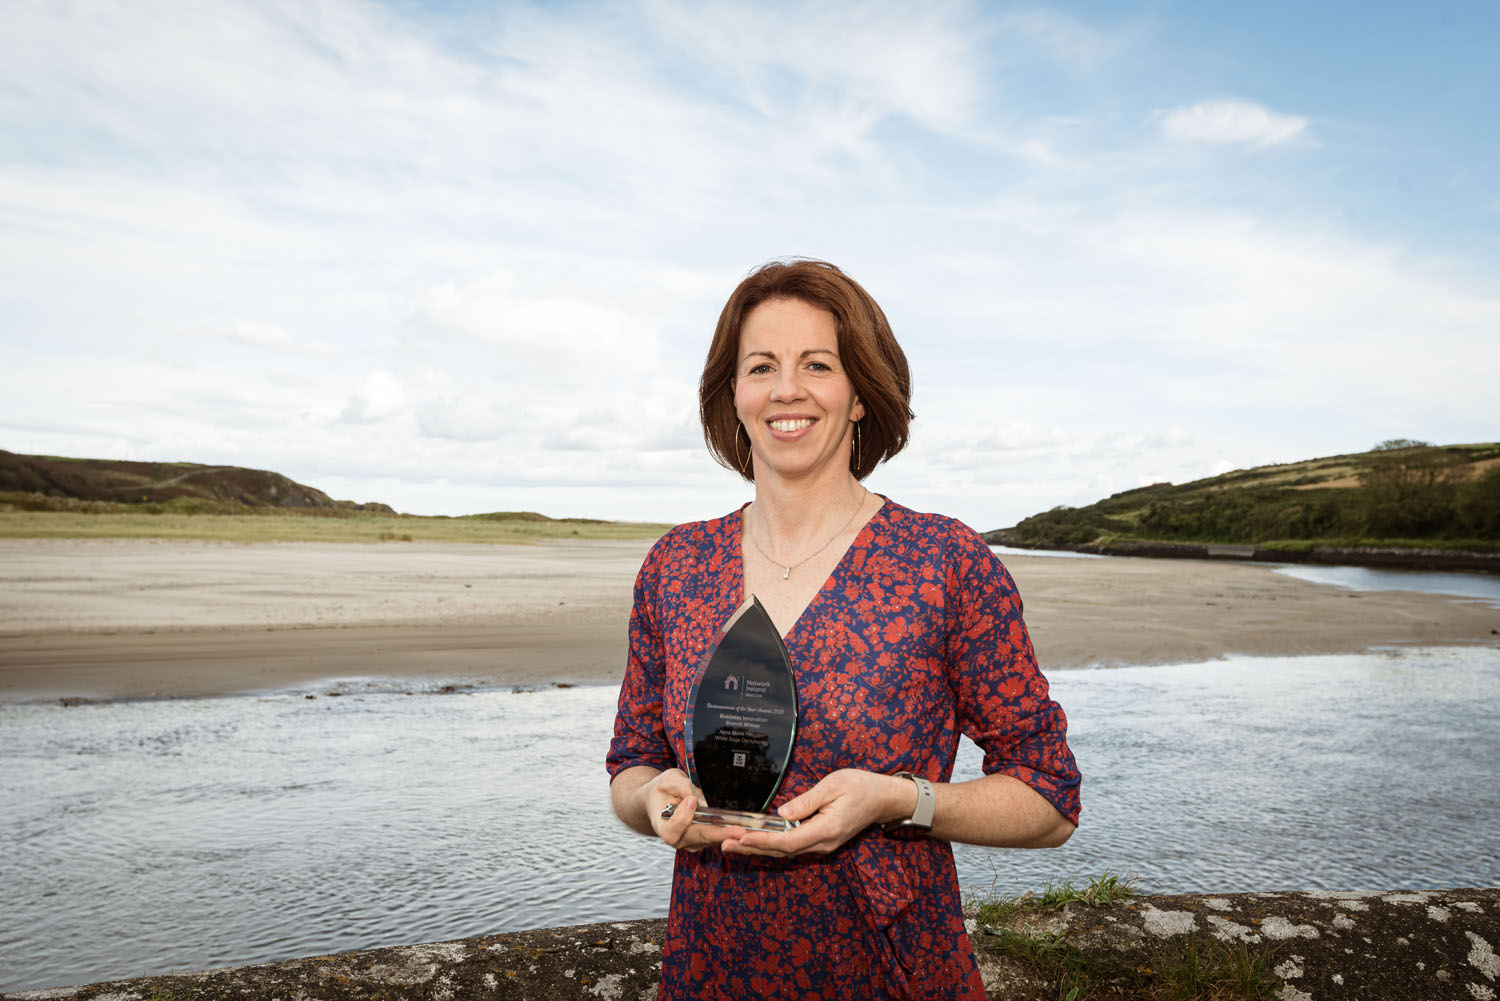 Network Ireland West Cork 2020 Businesswoman of the Year winner